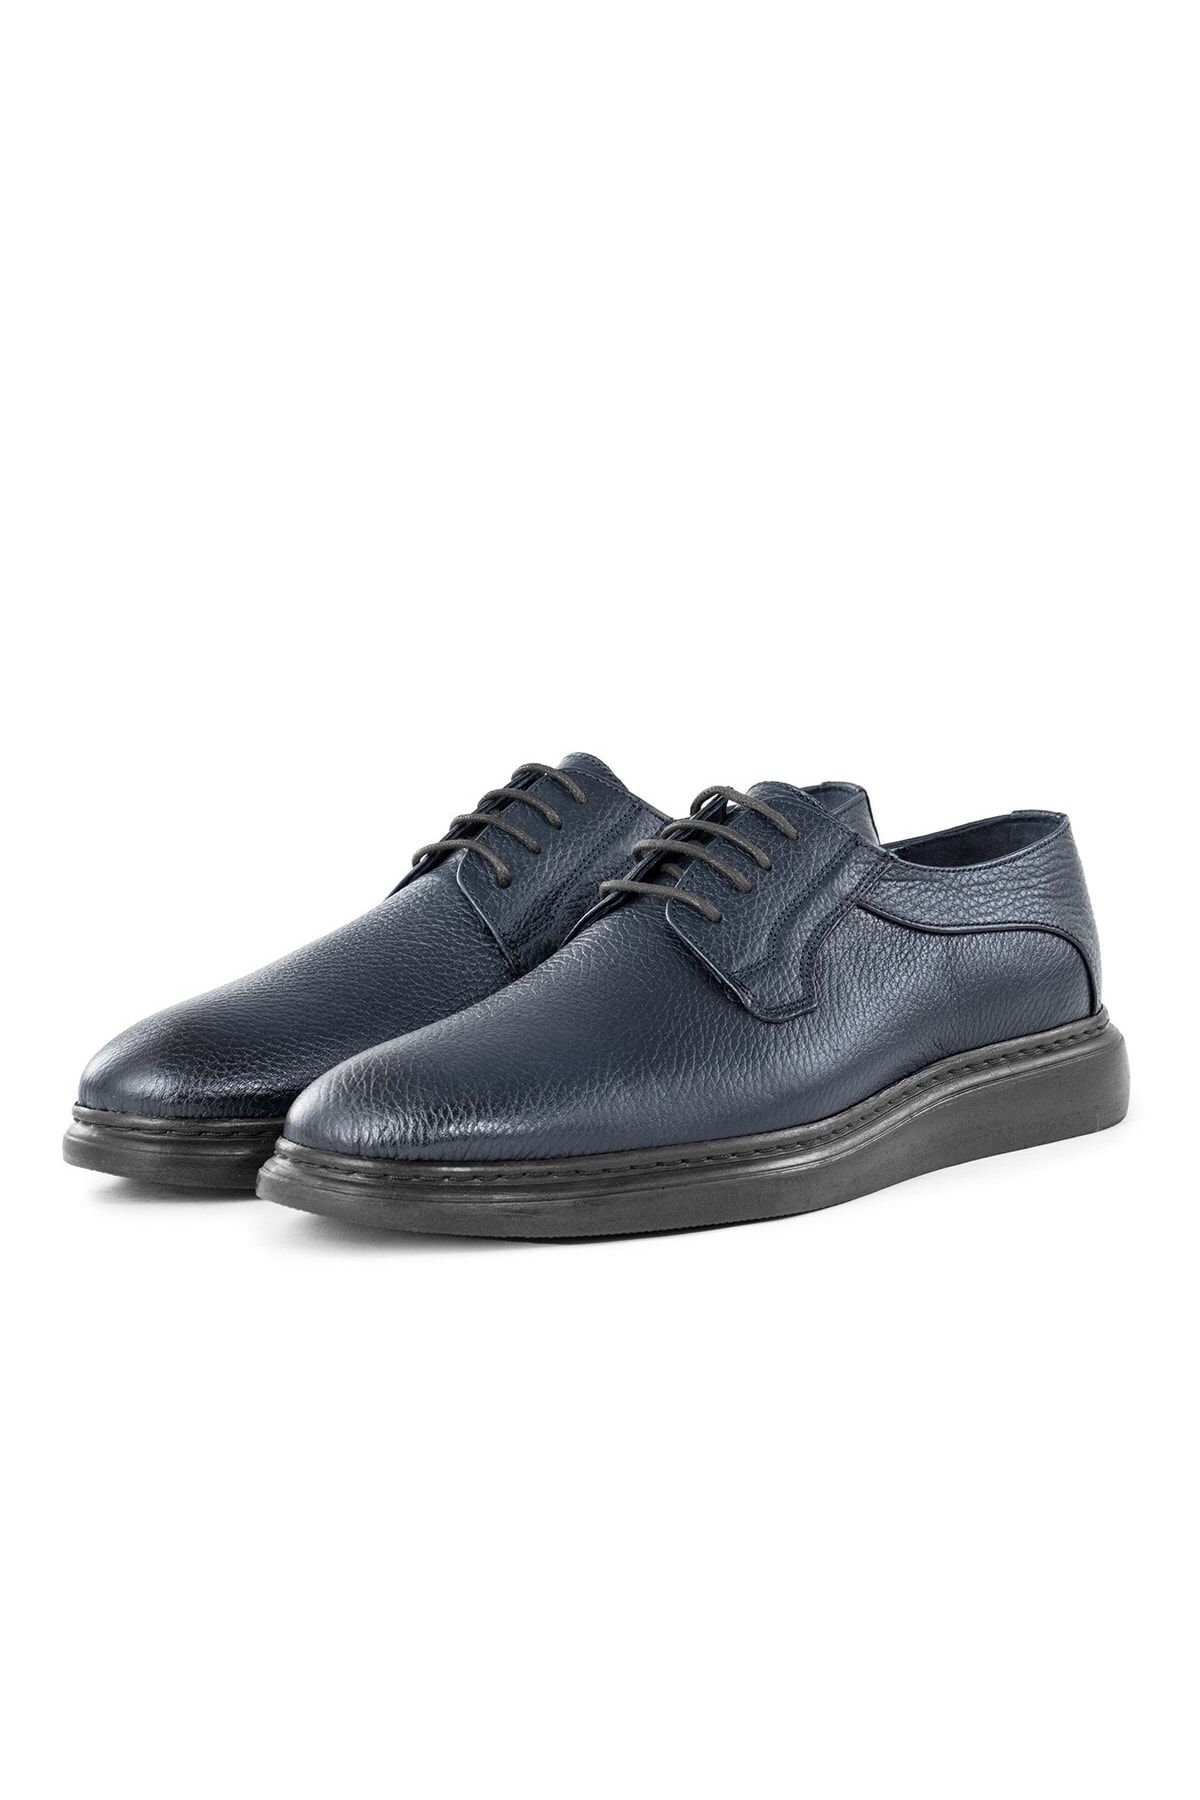 Ducavelli Enkel Hakiki Deri Erkek Günlük Klasik Ayakkabı, Hakiki Deri Klasik Ayakkabı, Derby Klasik